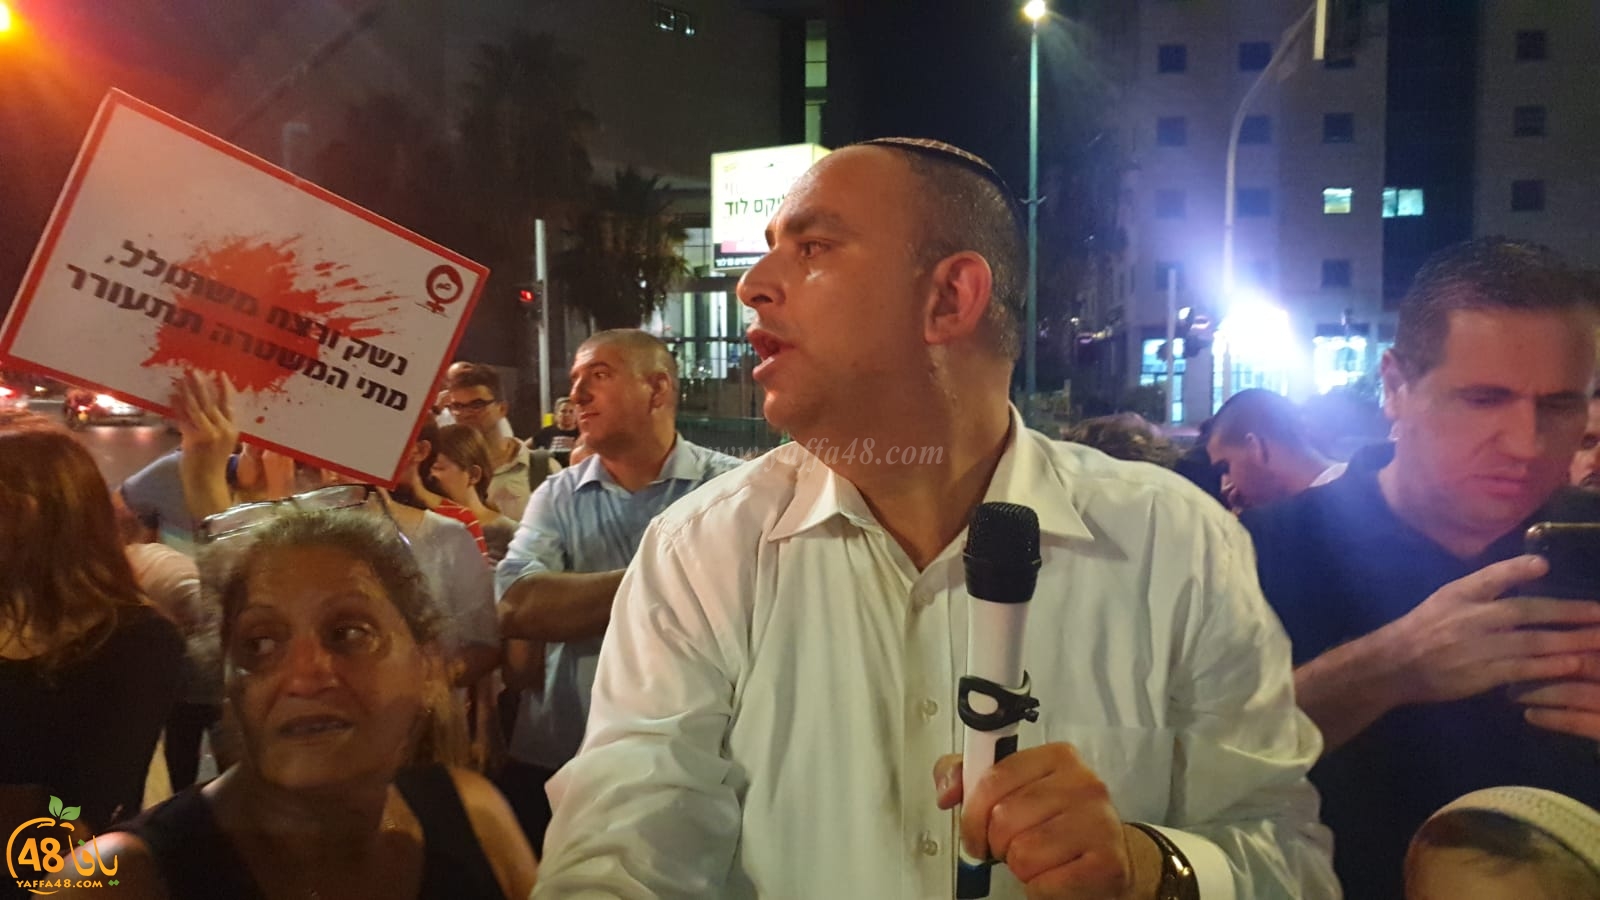  فيديو: تظاهرة ضد العنف في مدينة اللد ورئيس البلدية العملاء هم مصدر الفوضى